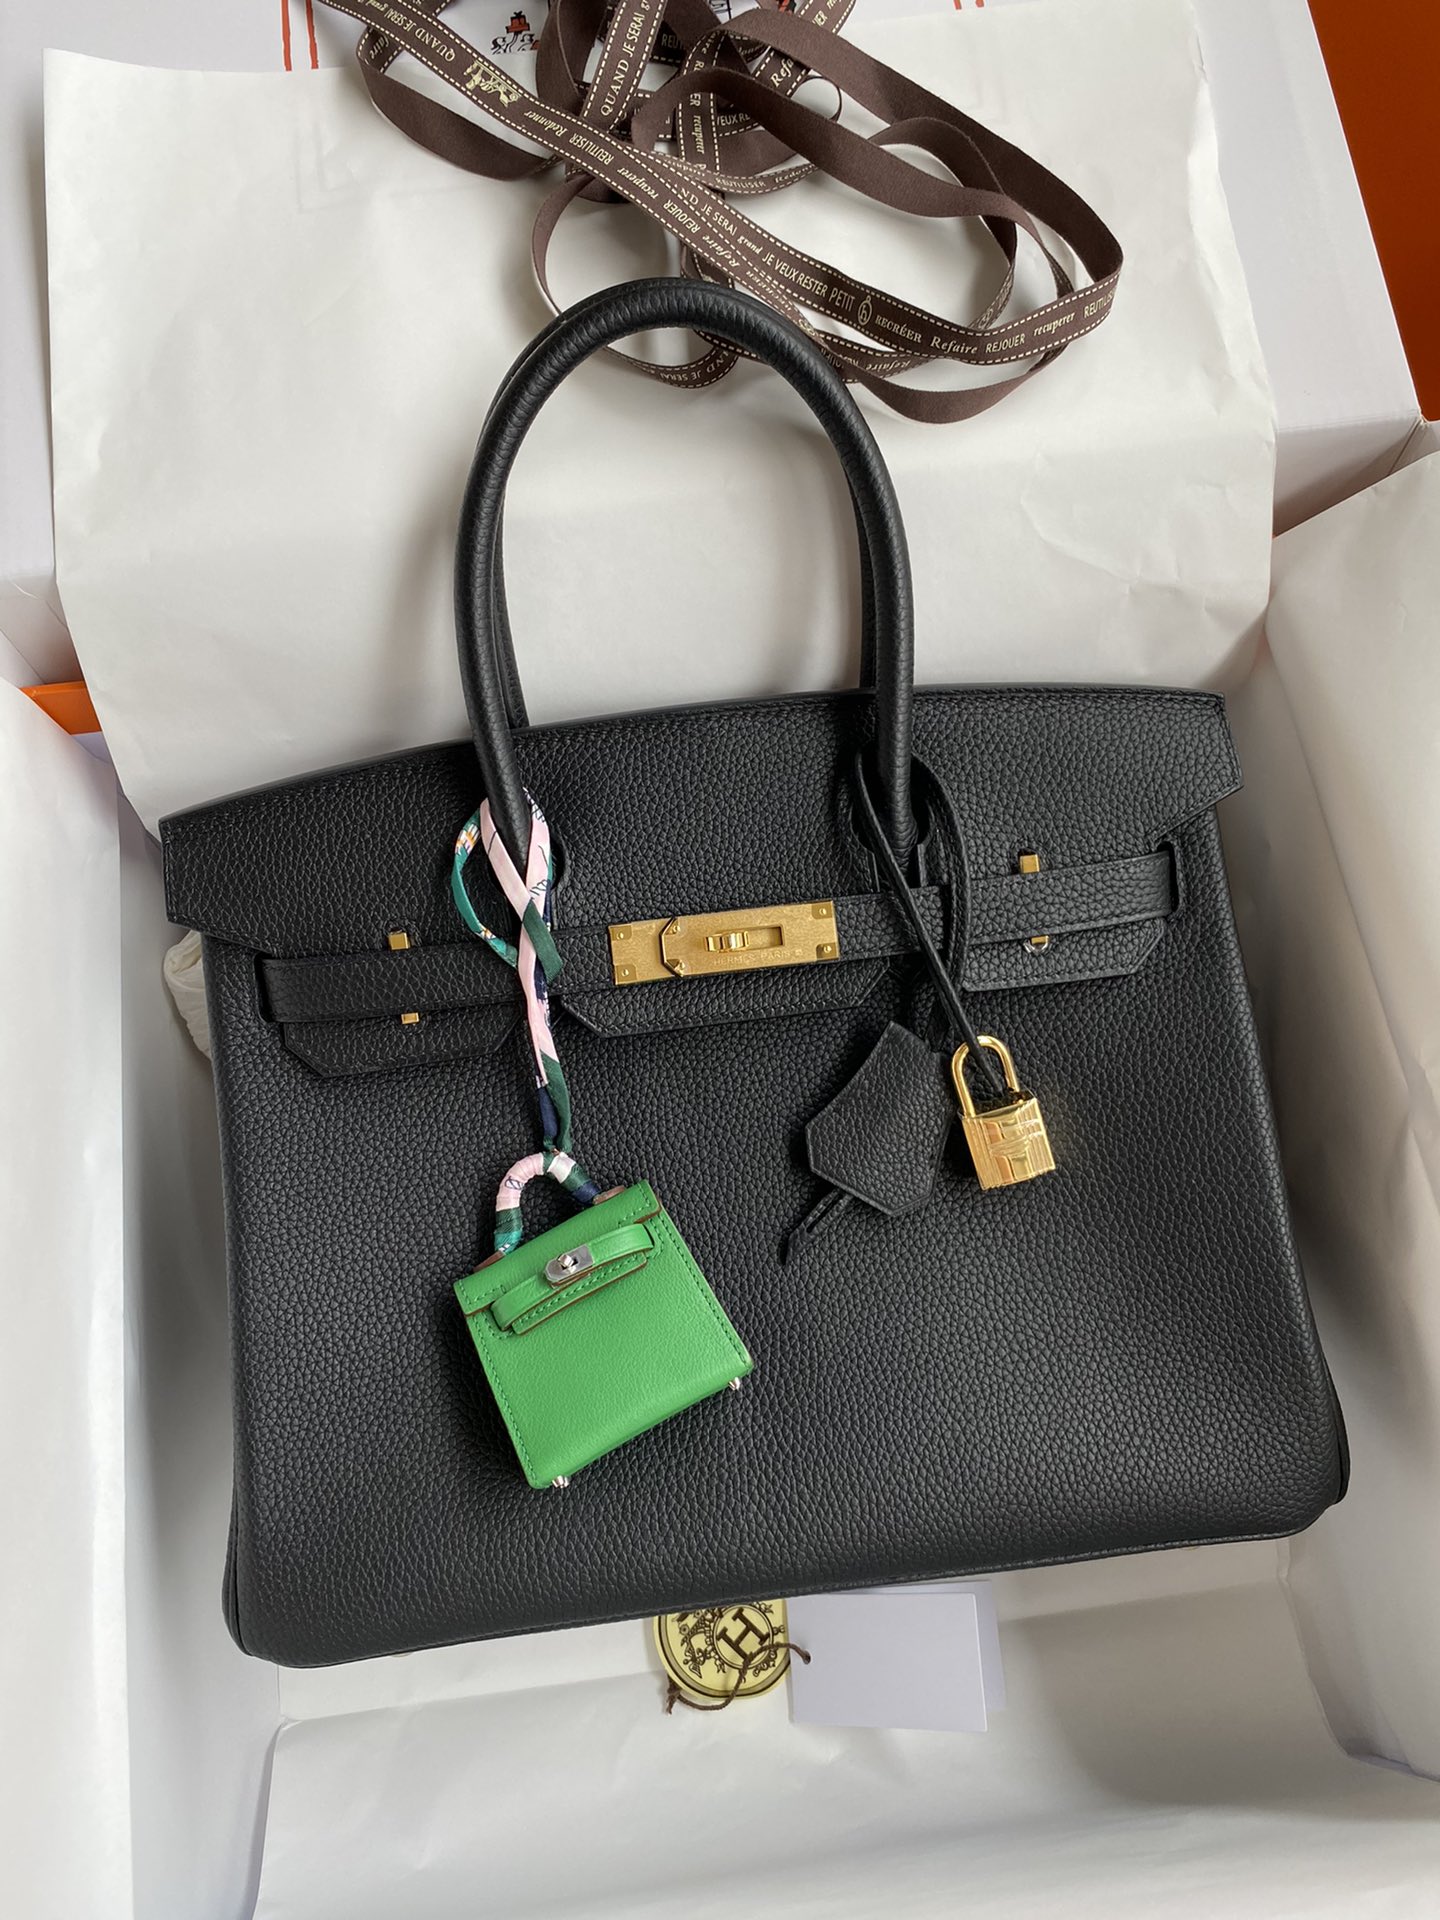 Hermes Birkin Bags Handbags Black Sewing Silver Hardware Calfskin Cowhide